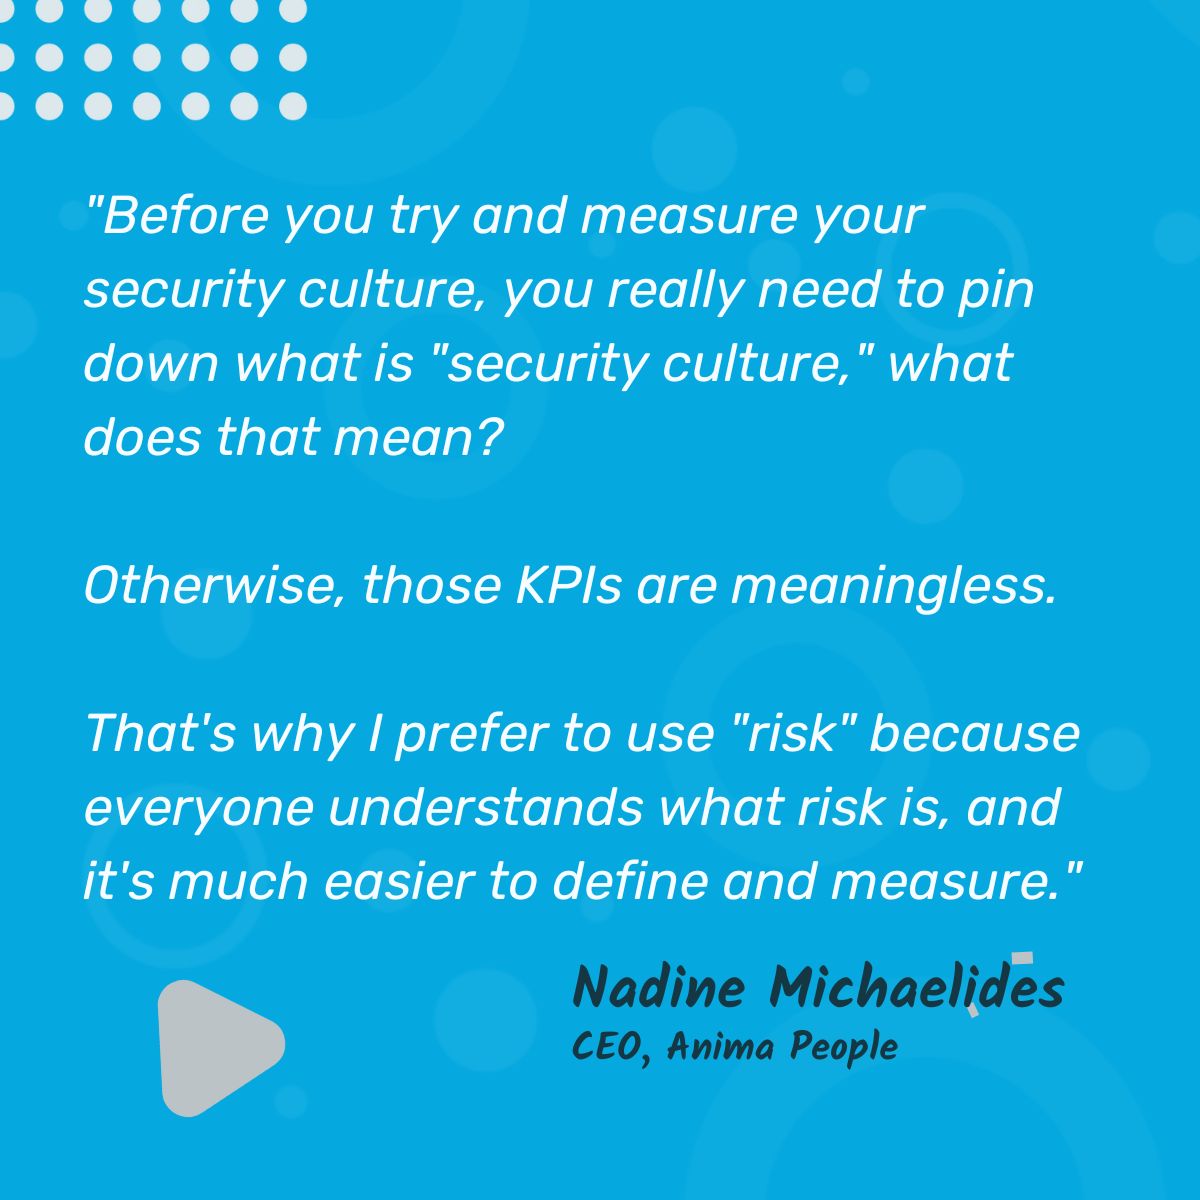 Defining Security Culture v Risk_Nadine M.2